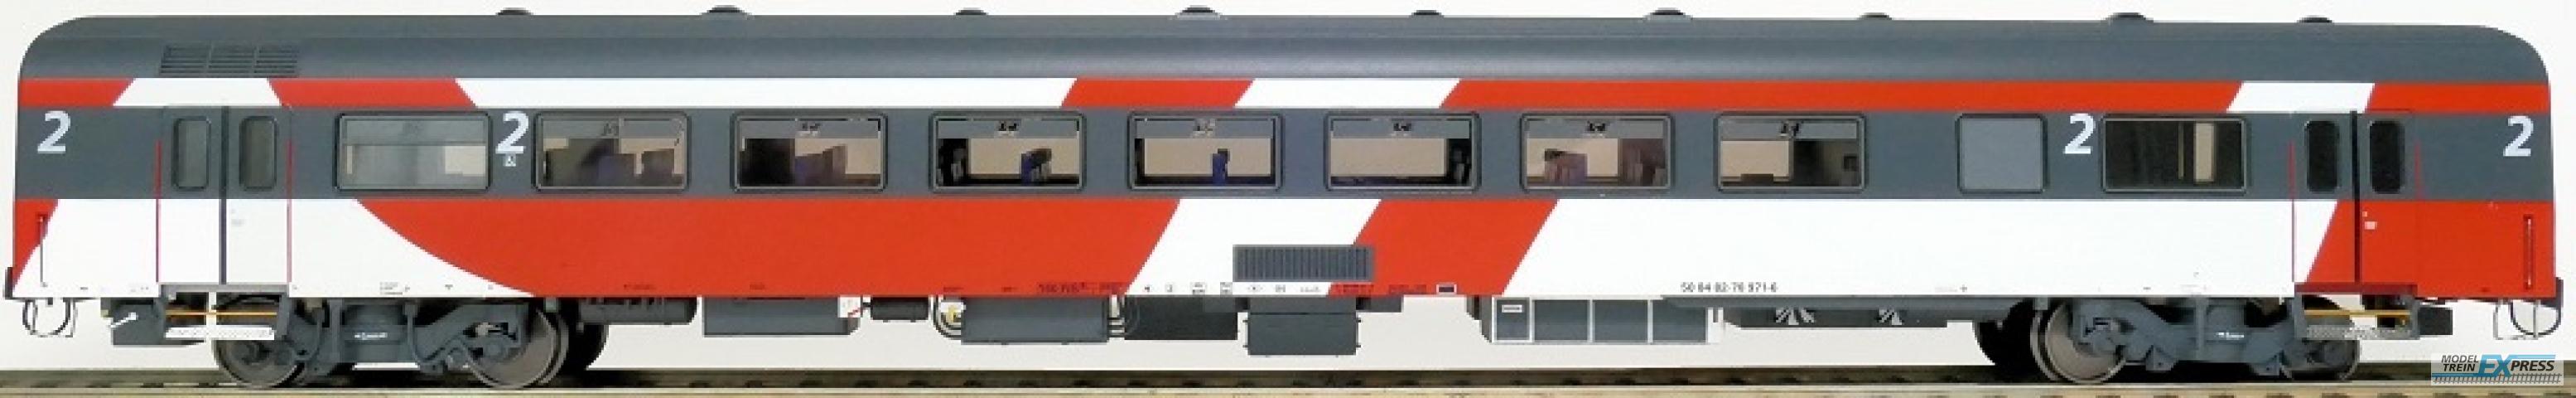 Exact-train 11187 NS ICRm Fyra 1 (Amsterdam - Brussel) für die Hsl-Strecke eingesetzt Gepäckwagen Bd(Rot/Rose/Weiss) mit Beleuchtung und Figuren, Ep. VI